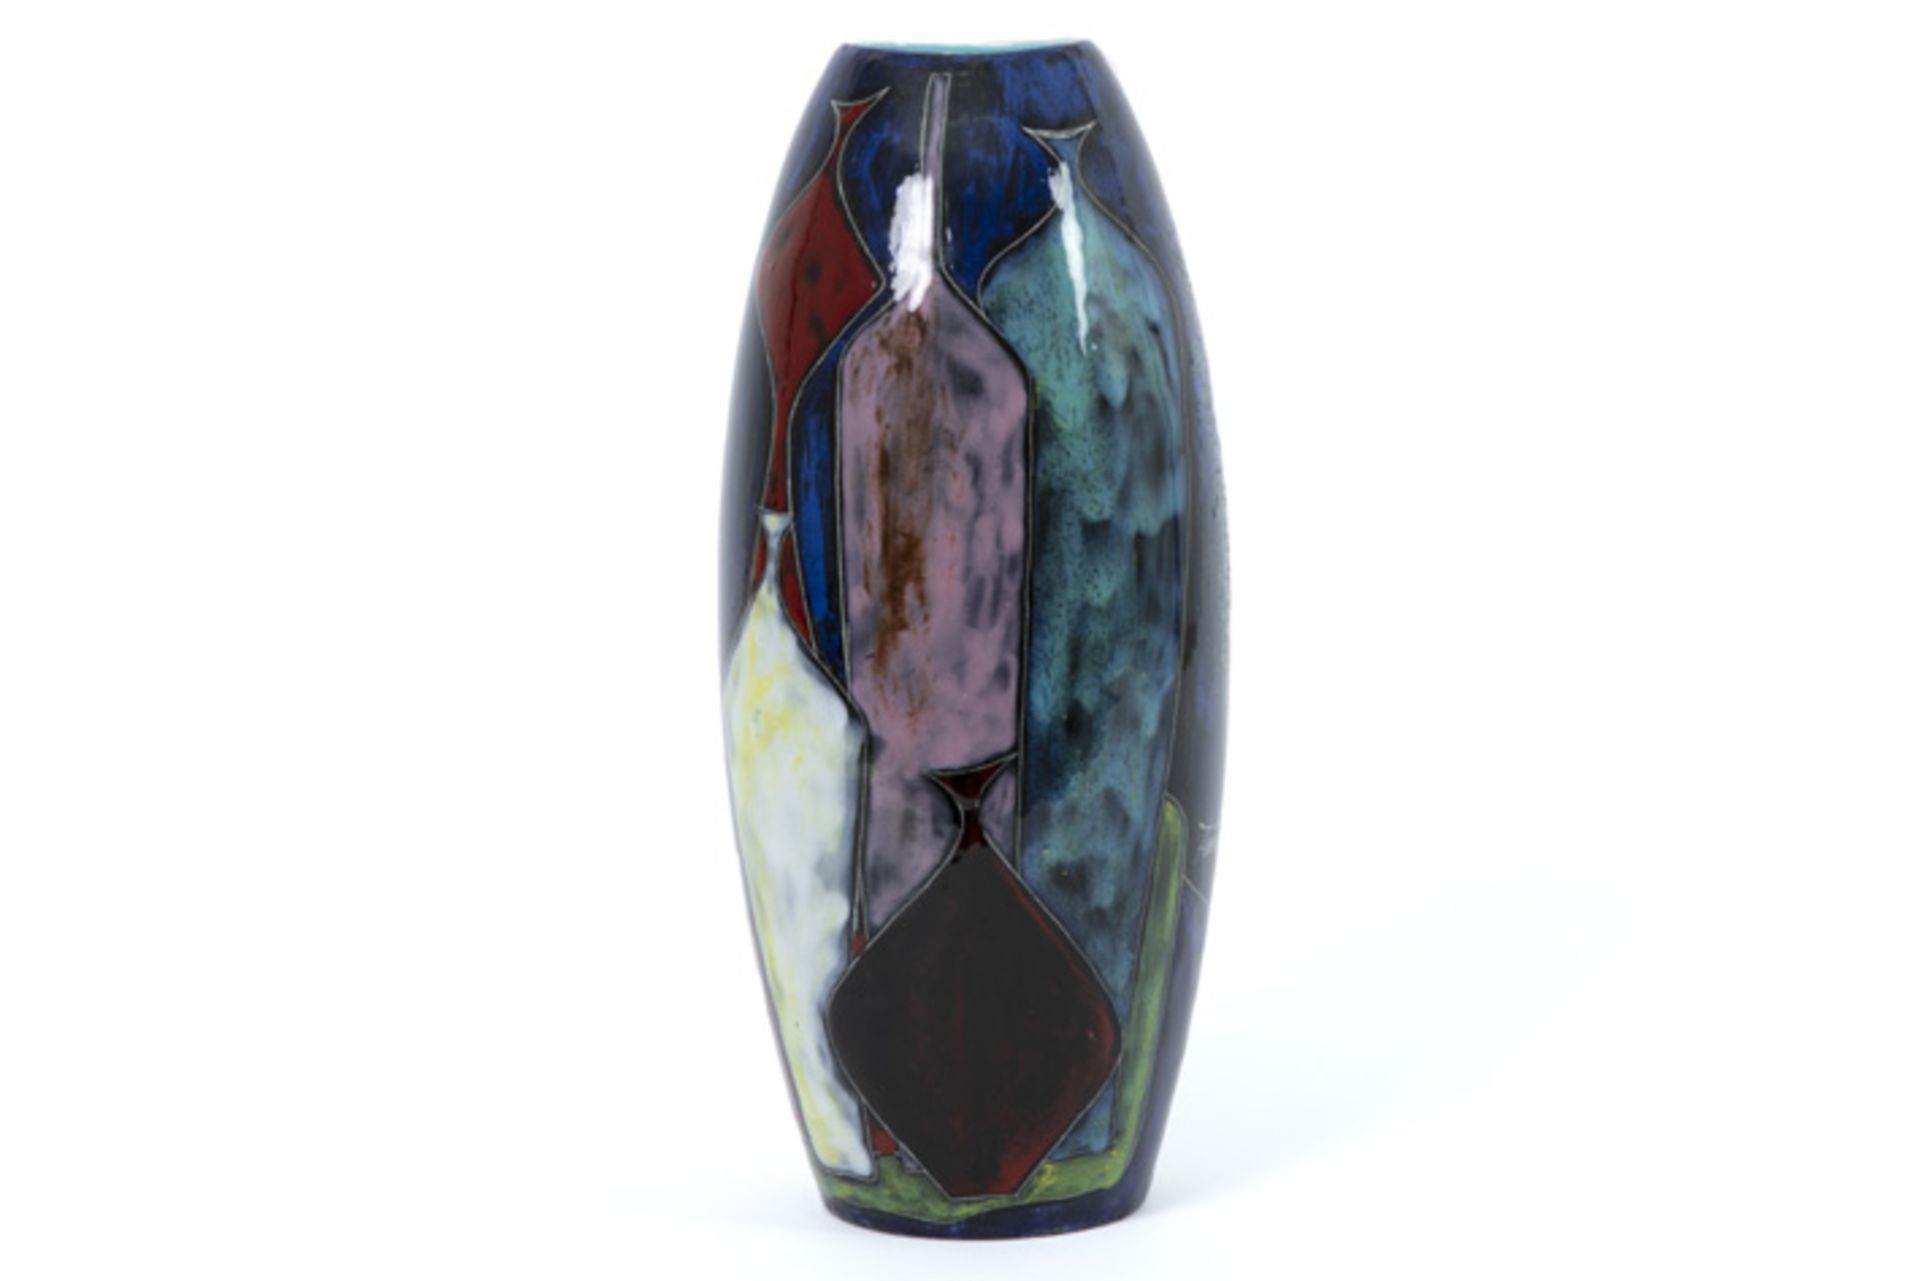 Italian "Marcello Fantoni" vase in glazed earthenware - signed||FANTONI MARCELLO (1960 - 2015) Itali